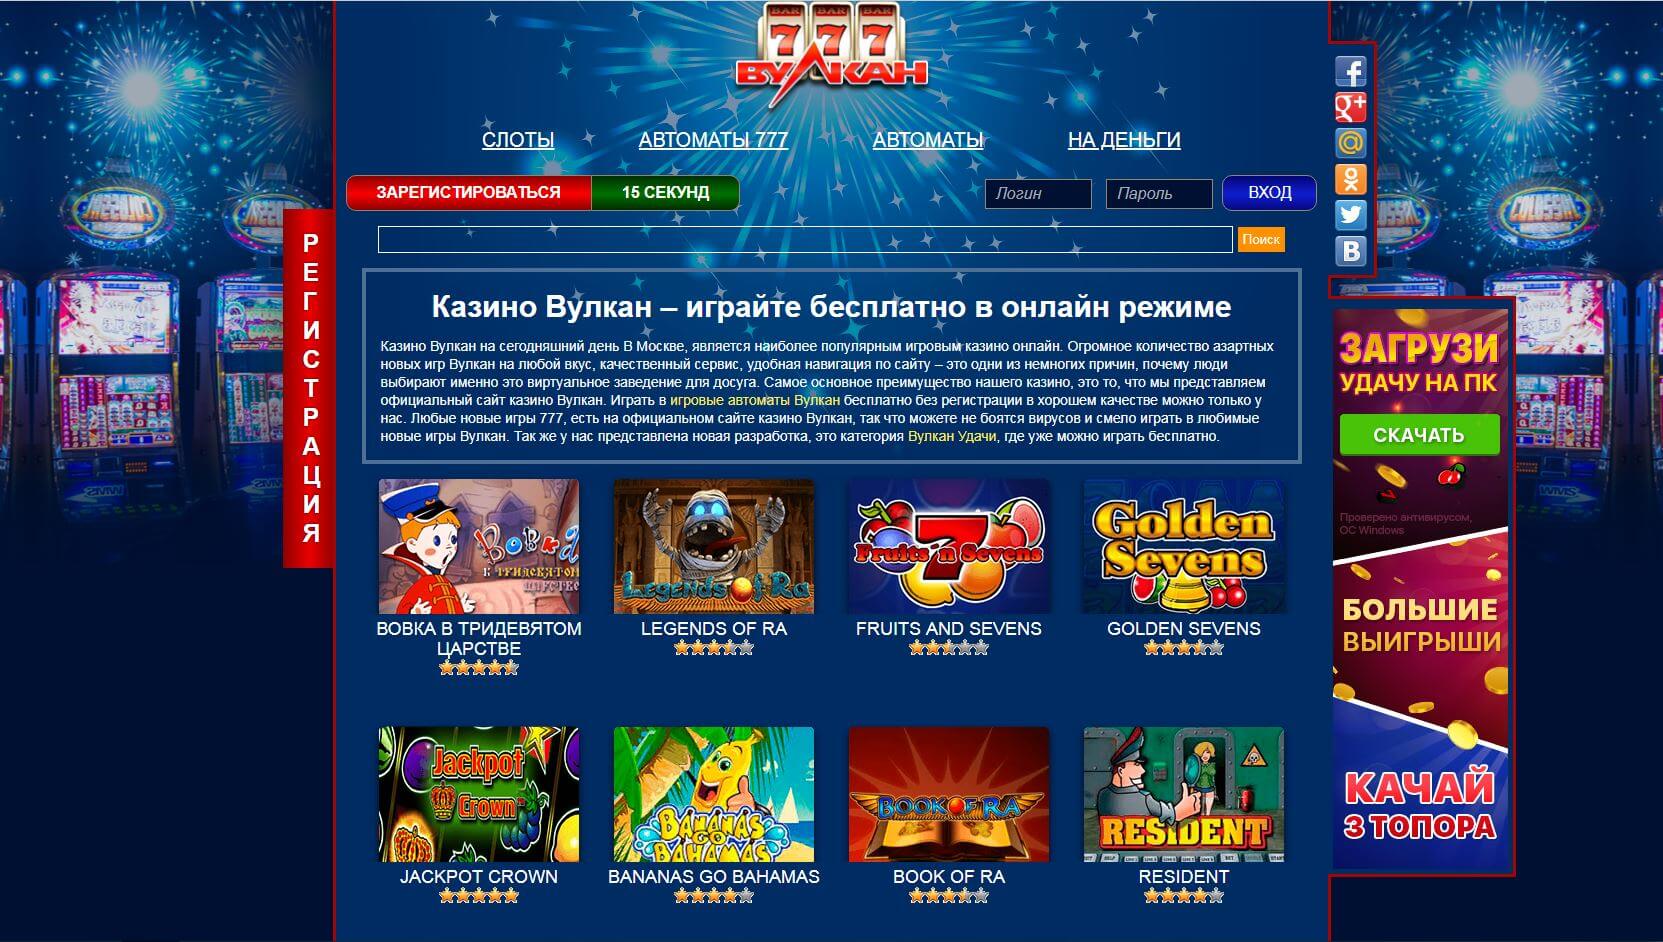 Как скачать вулкан казино интернет казино казахстан